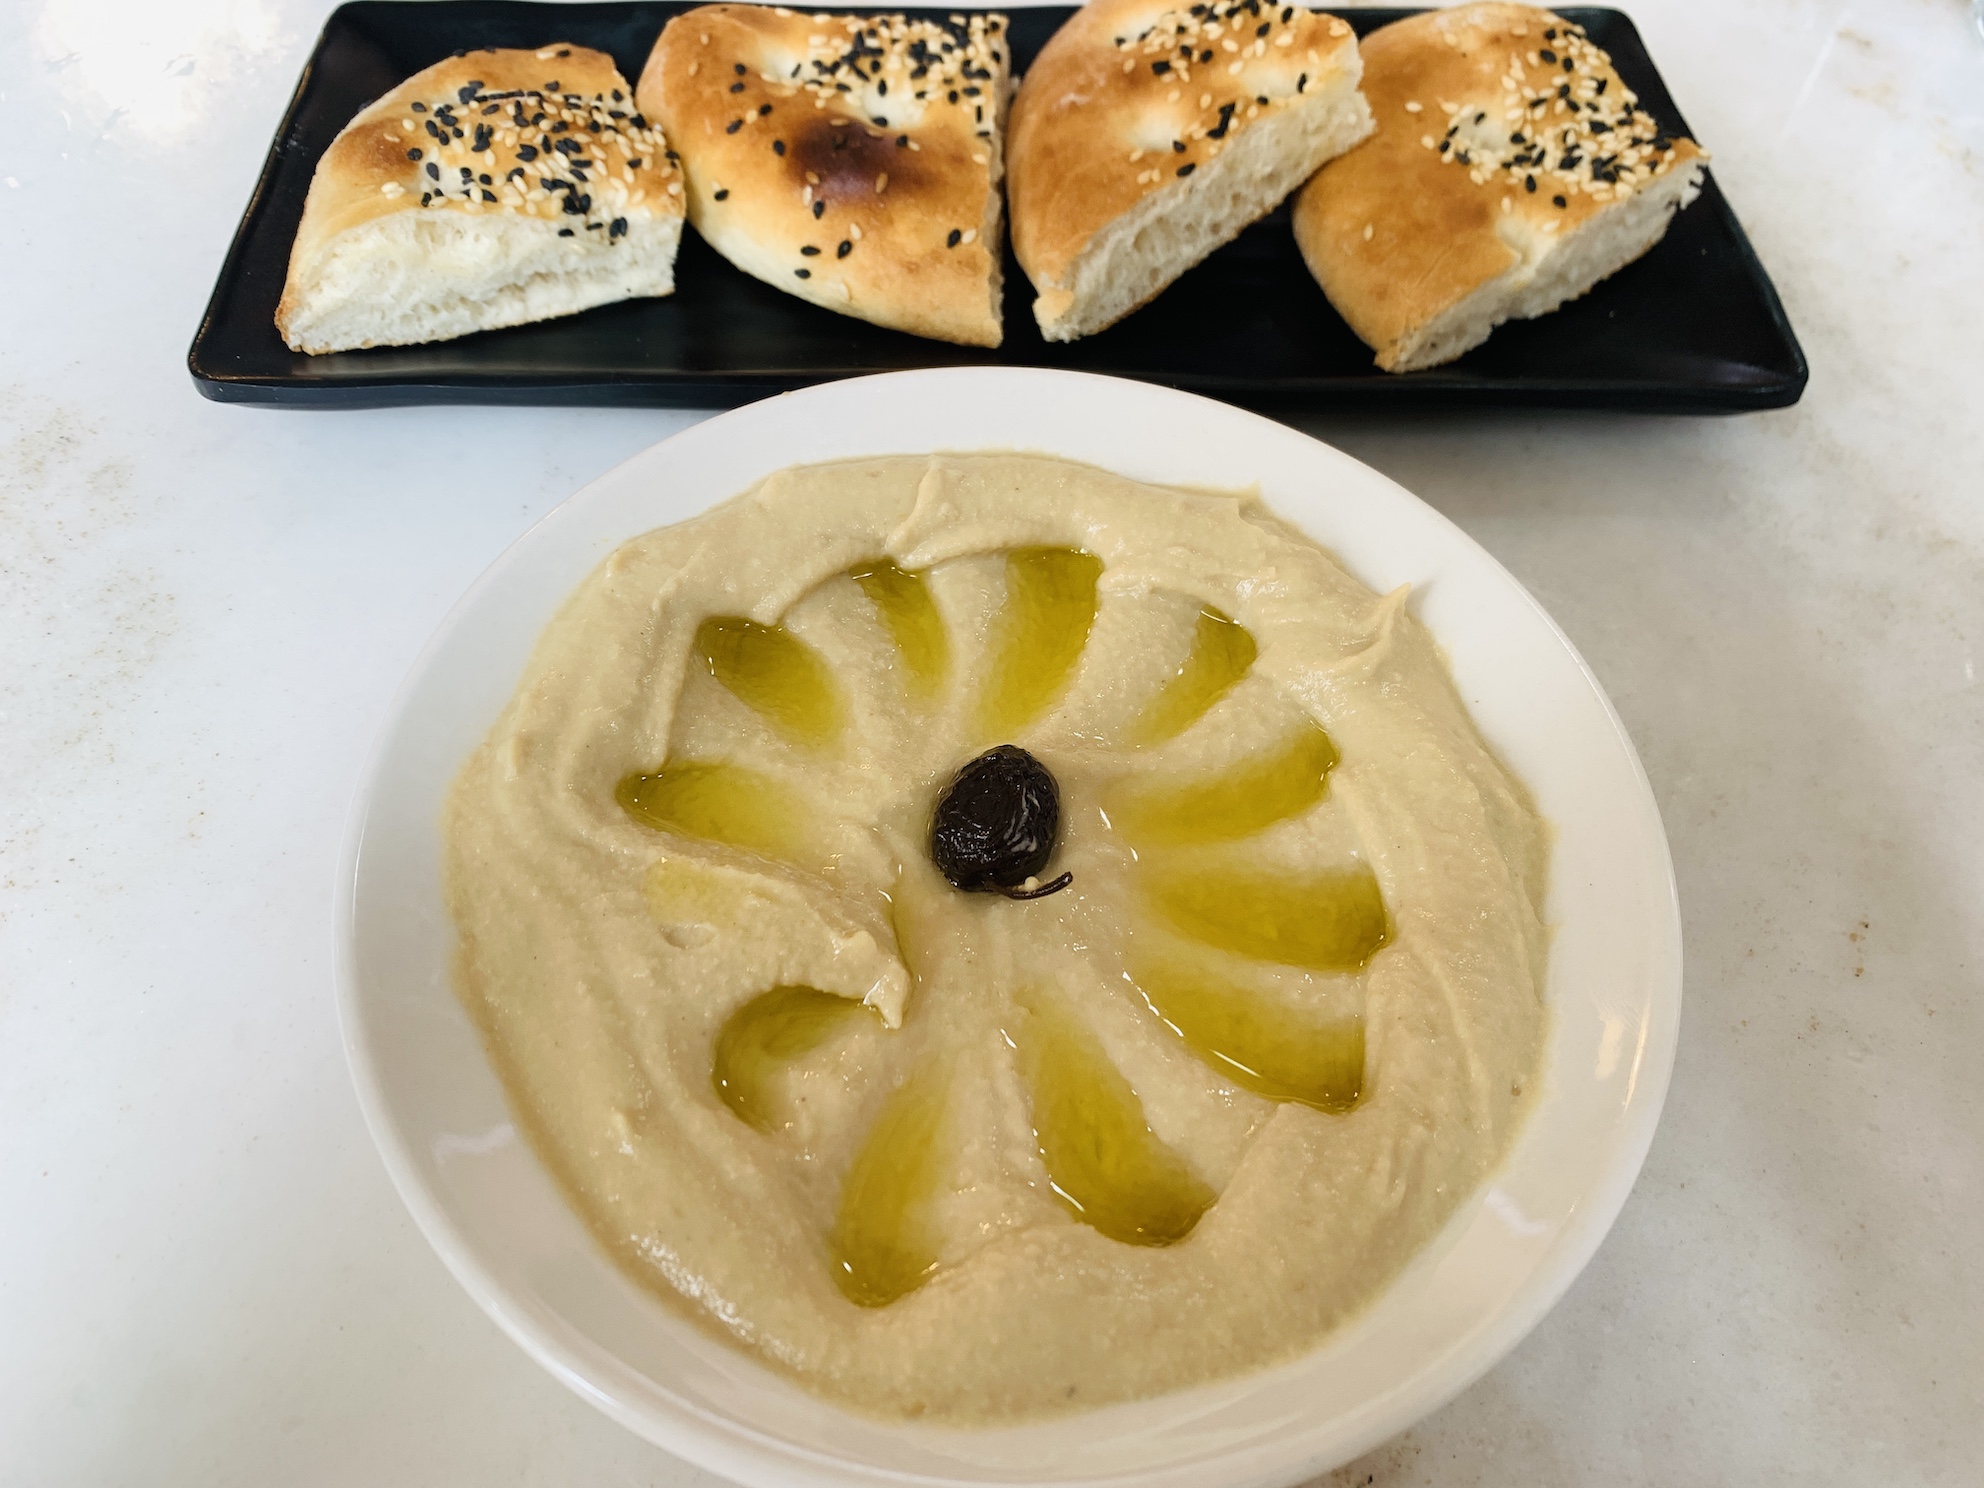 Derwish - Hummus